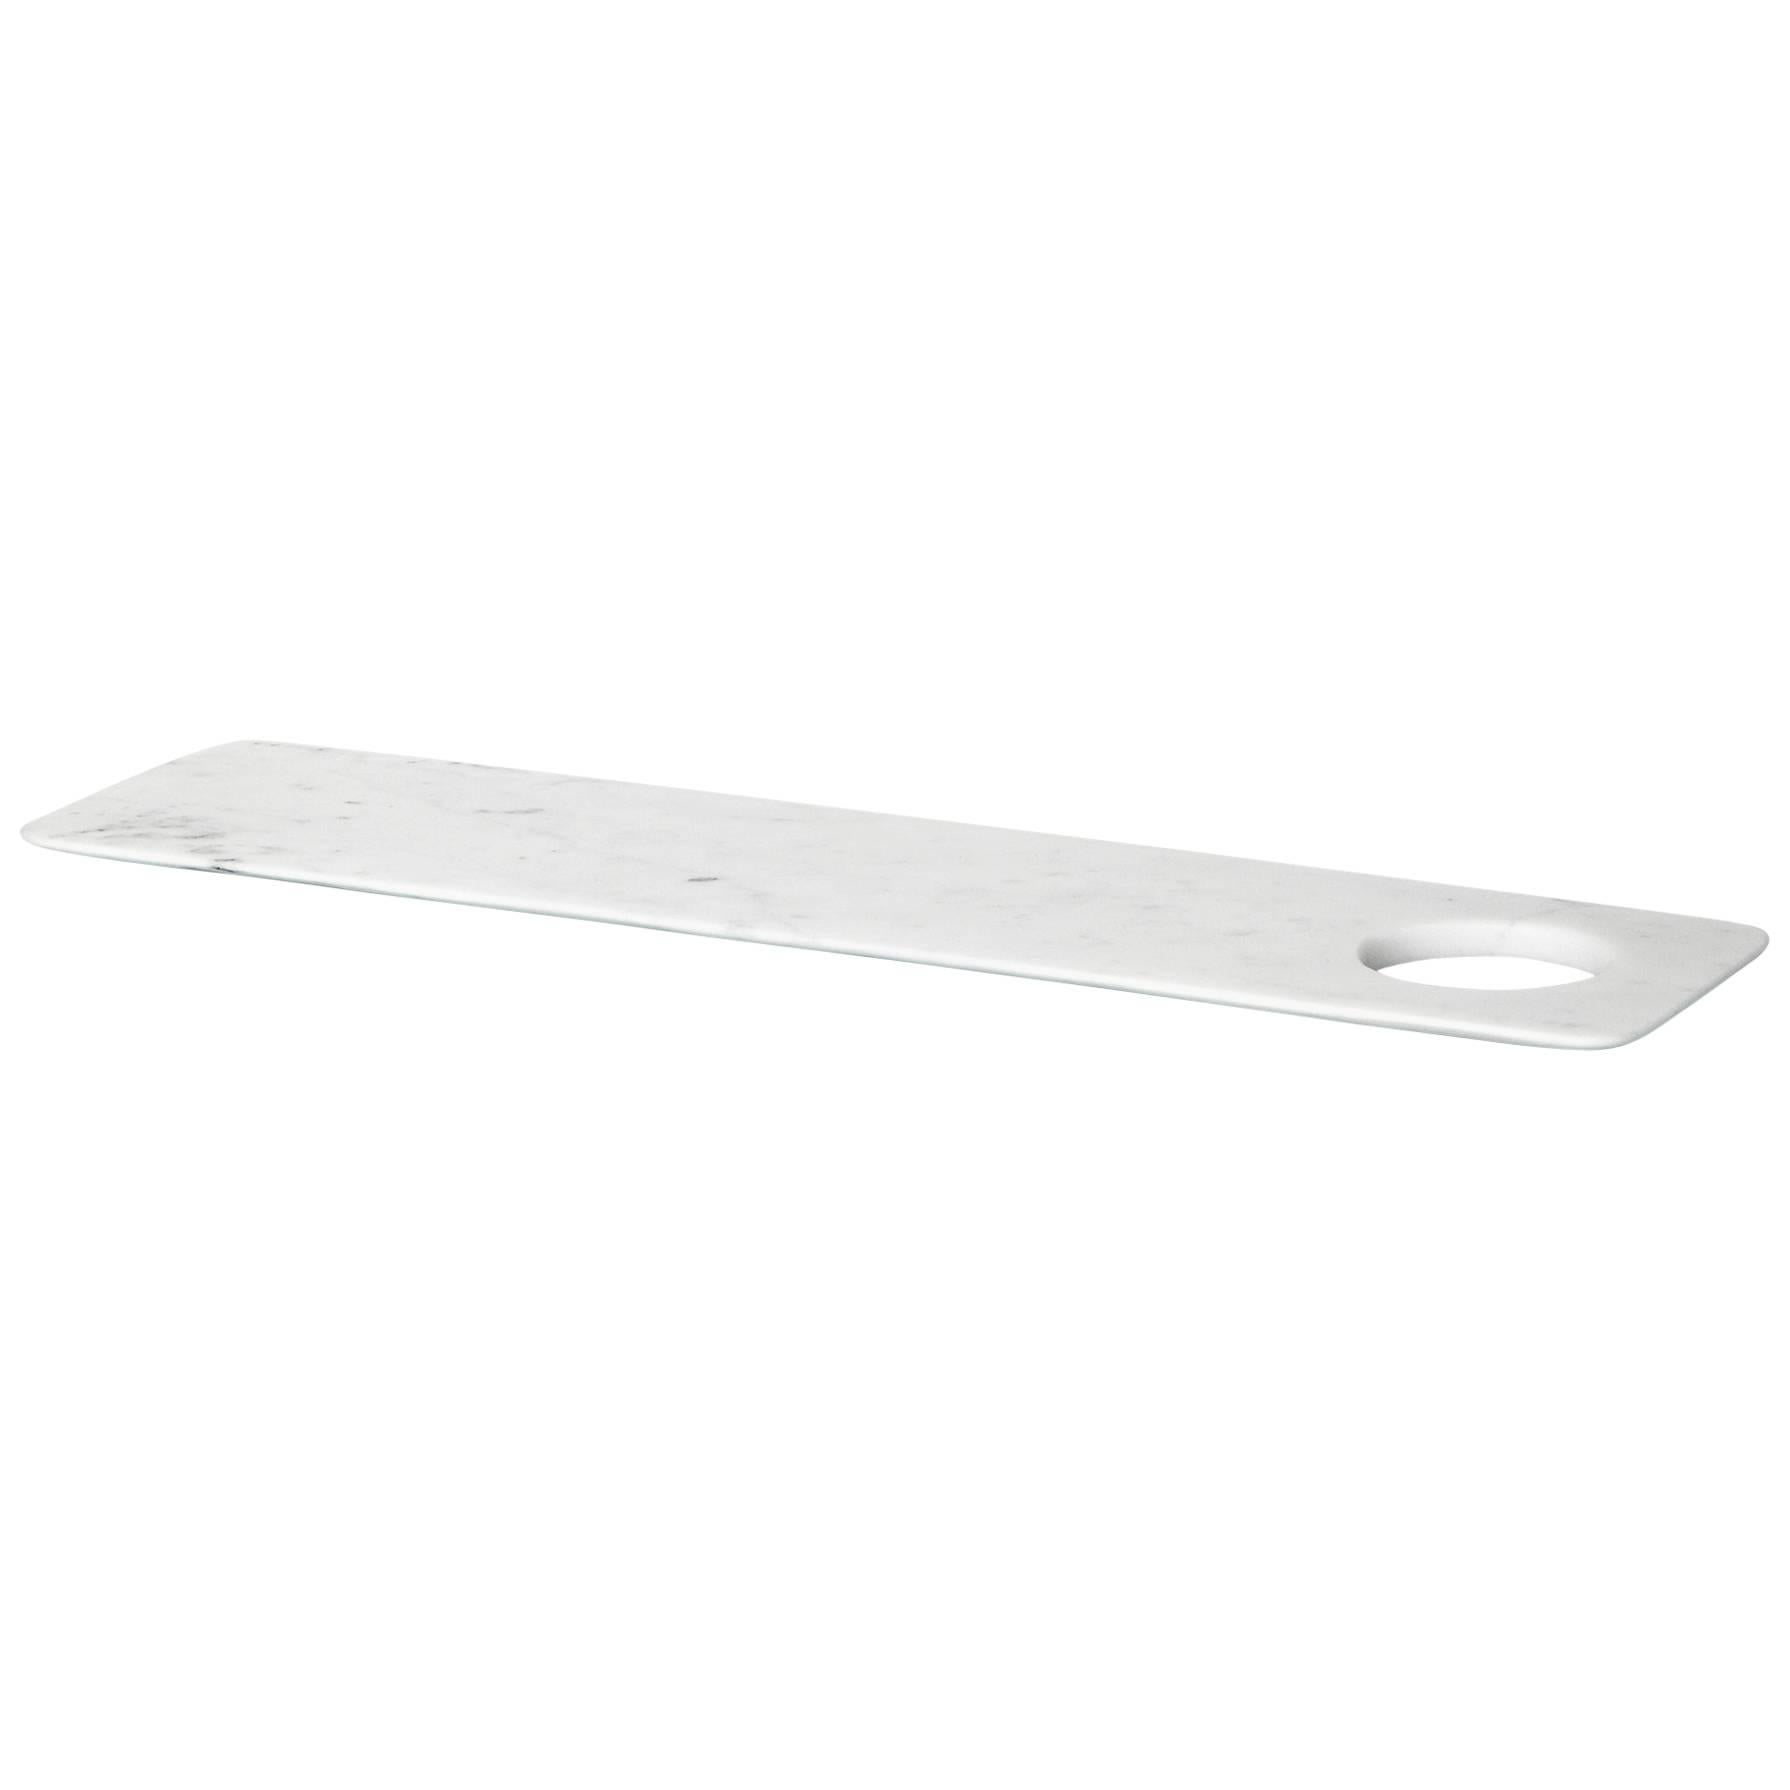 Neues modernes Tablett/Chopping Board aus weißem Carrara-Marmor, Schöpfer Studioformart